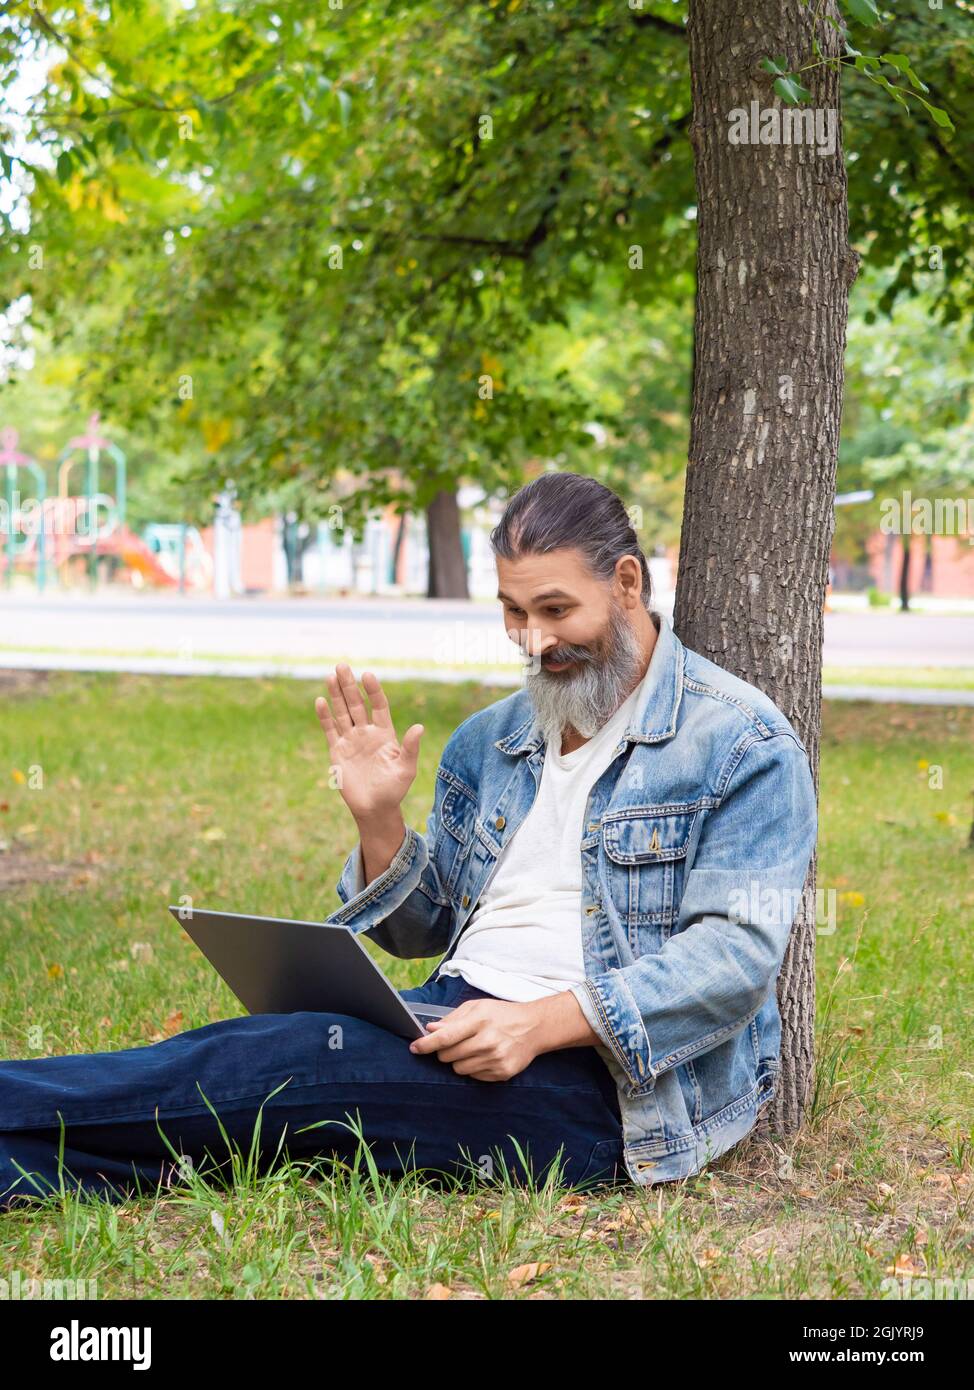 Homme d'âge moyen pendant un appel vidéo en ligne. Il est assis sur l'herbe dans le parc de la ville avec un ordinateur portable. Il agite la main - Bonjour. Photo Vertrical. Banque D'Images